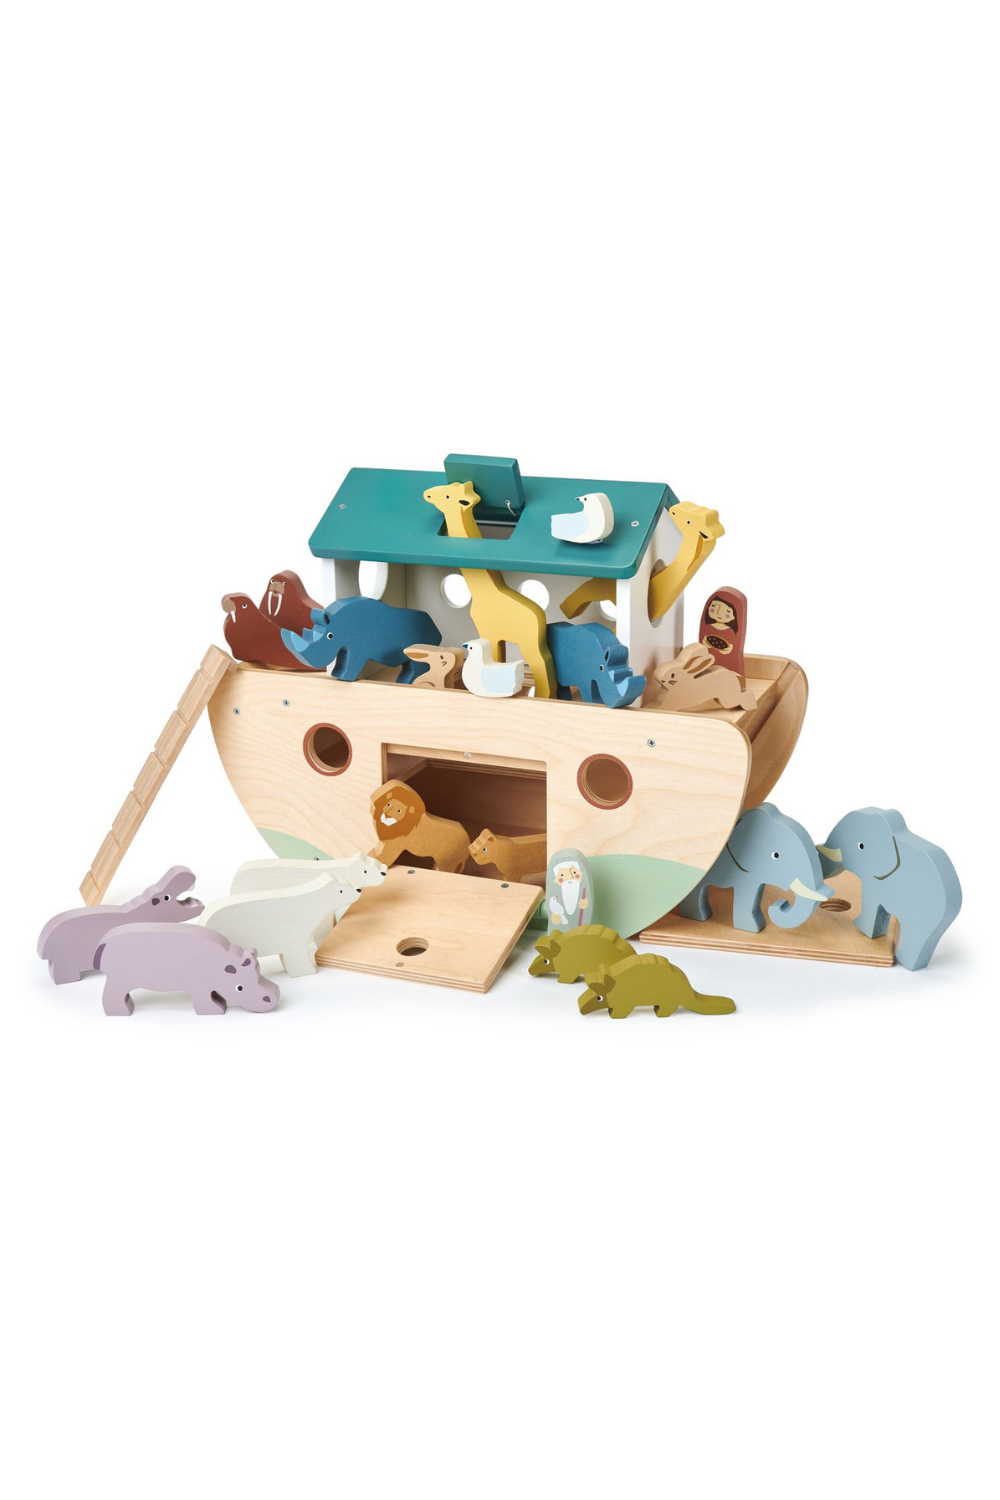 Noah’s Wooden Ark